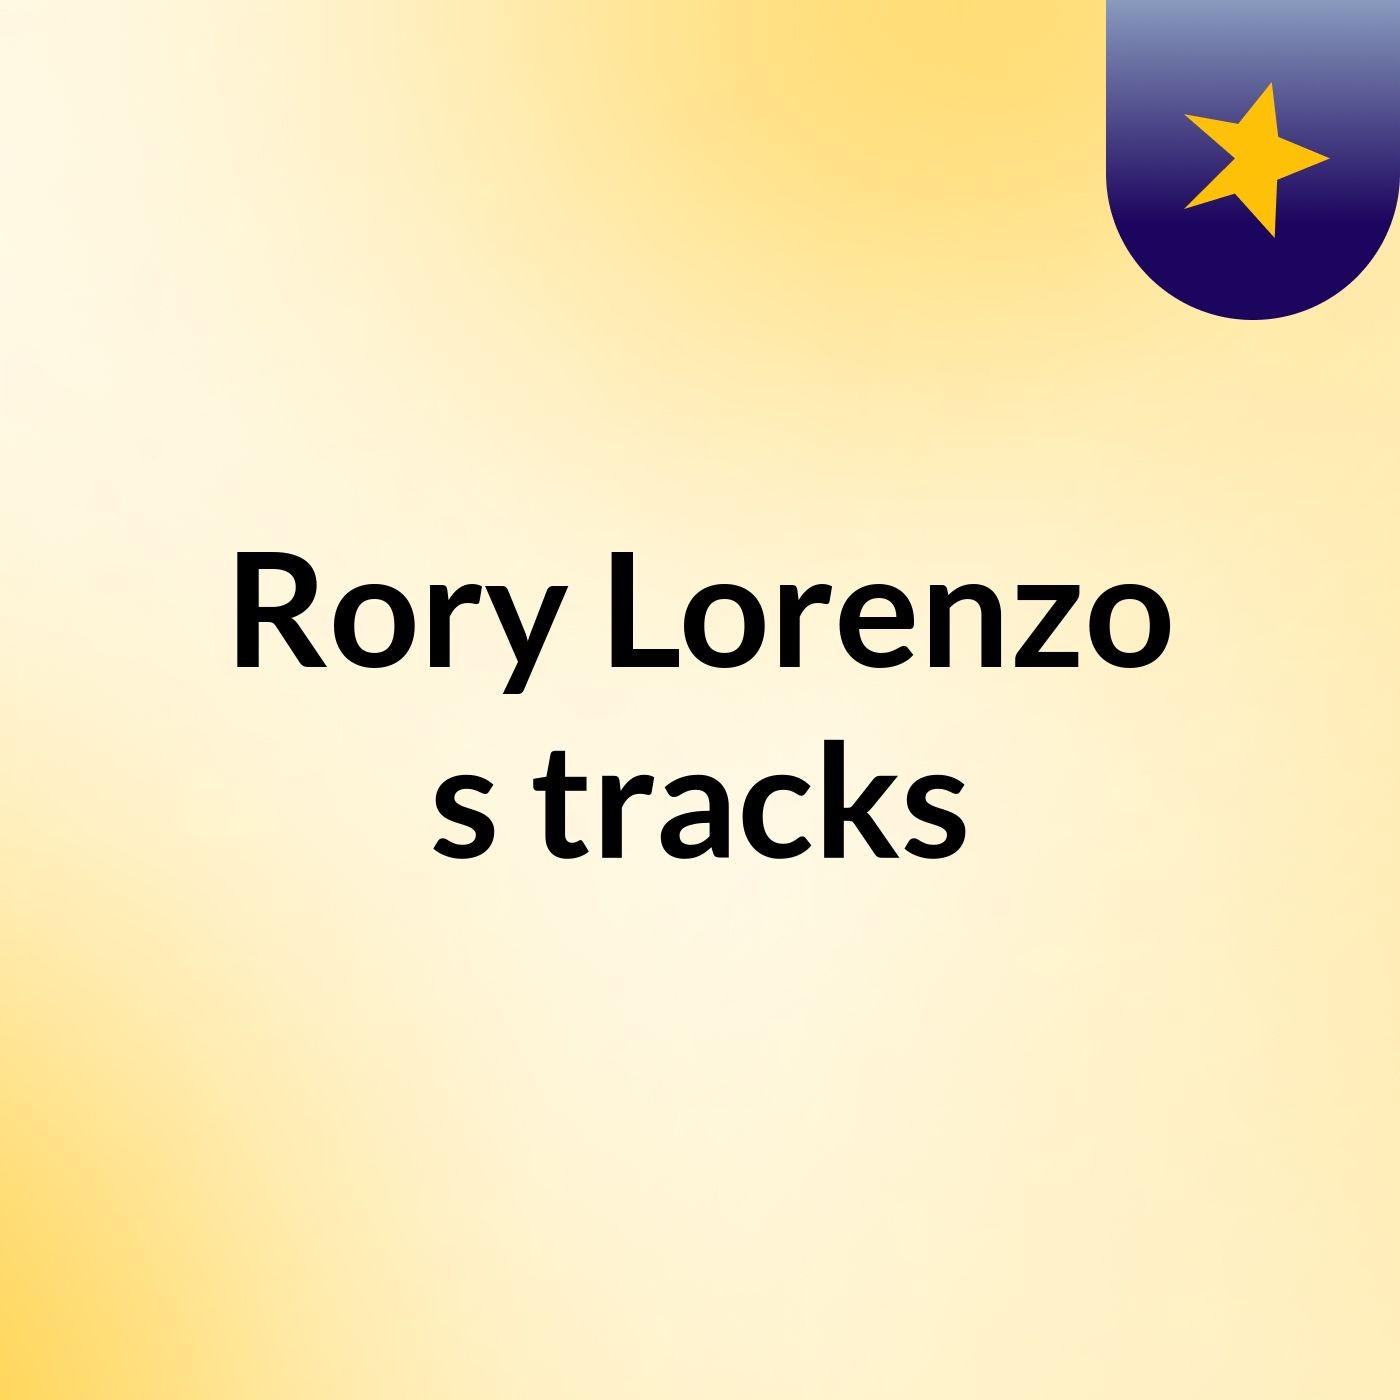 Rory Lorenzo's tracks